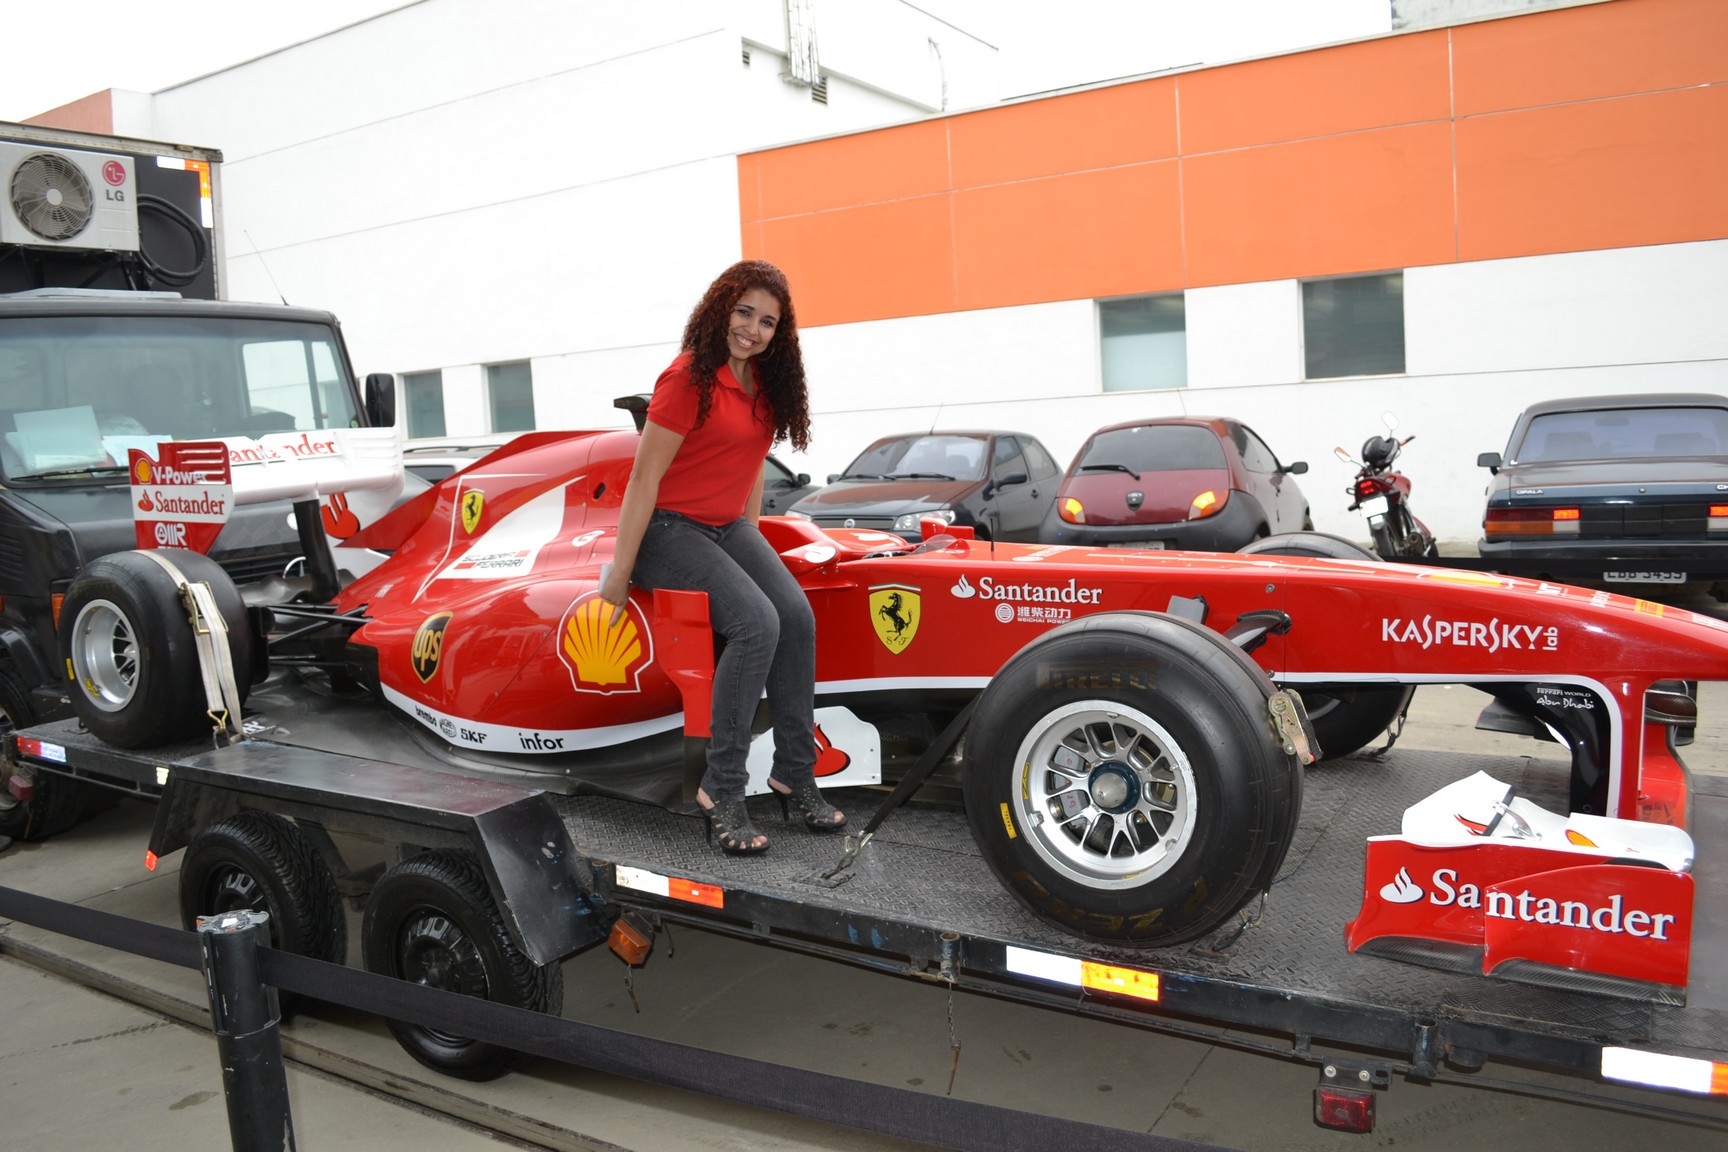 O Carro da Ferrari estara em esposição no centro de Seropédica até o dia 30/05.